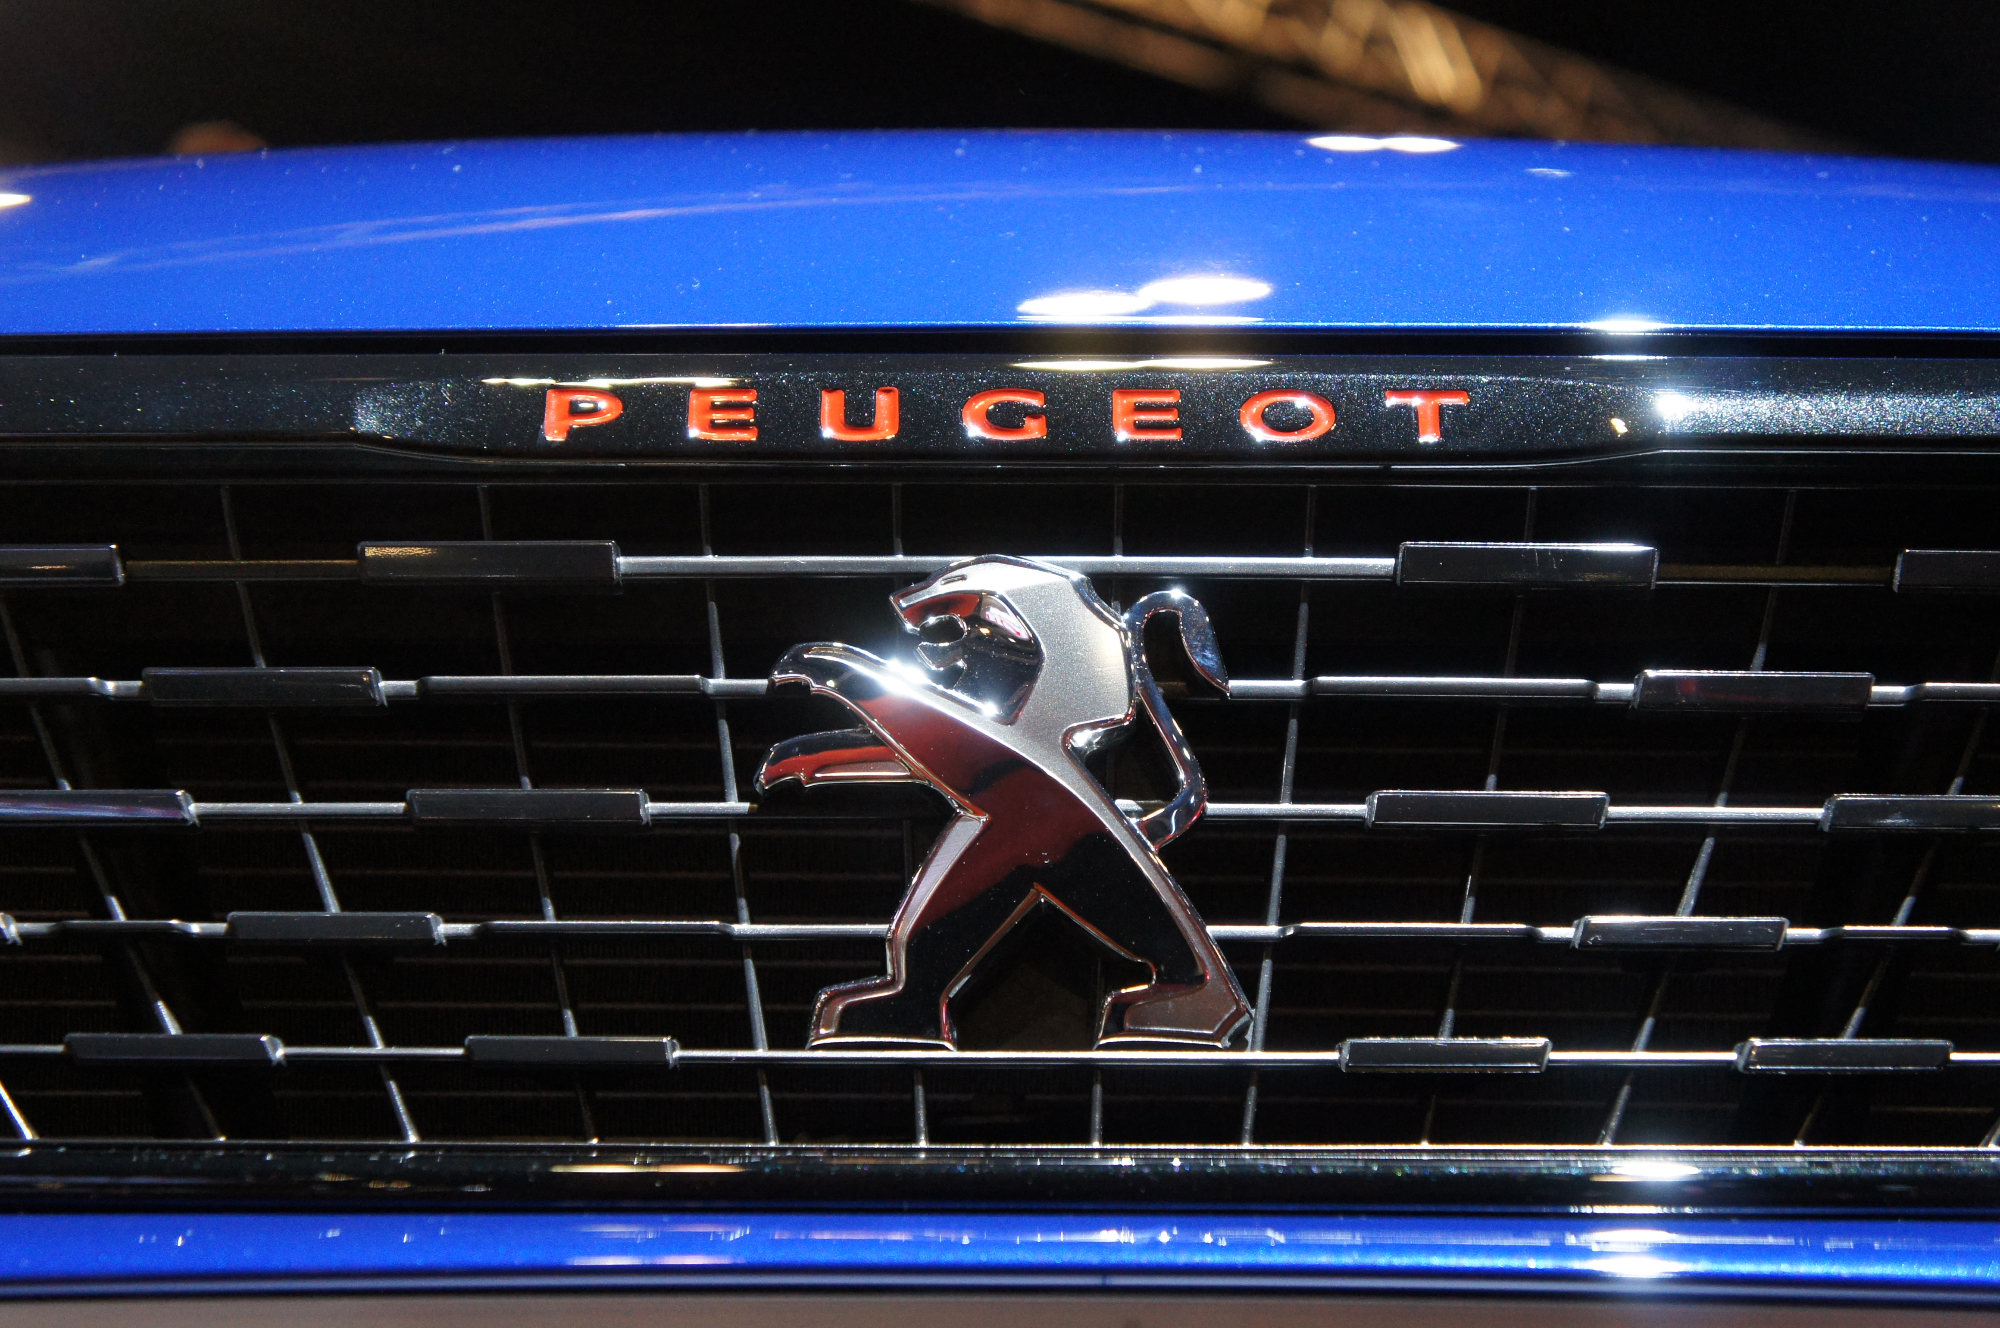 Peugeot je bil odličen nov avto za mojo družino